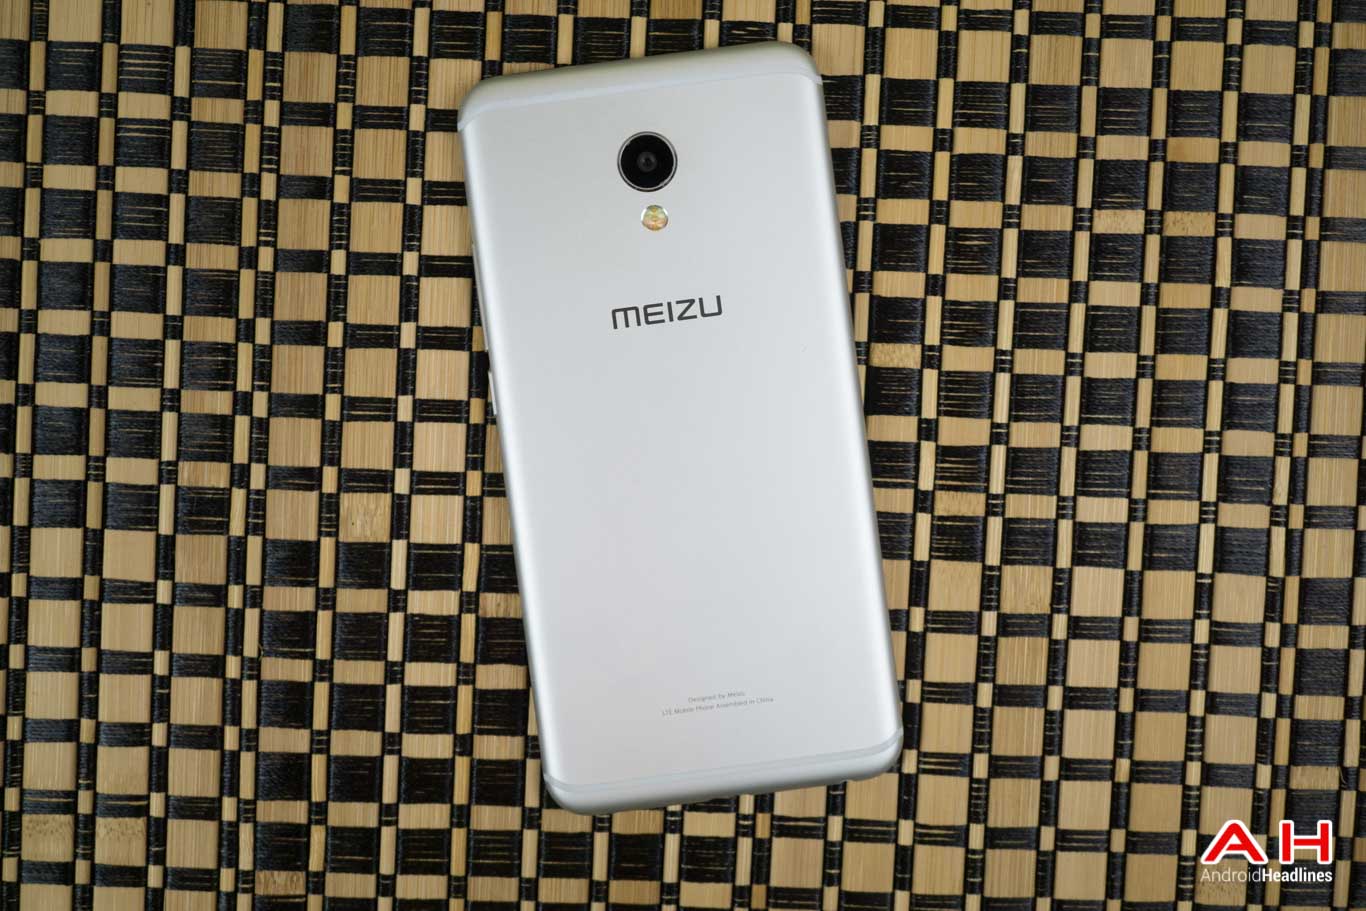 Đánh giá Meizu MX6: Thiết kế đẹp, hiệu năng tốt trong tầm giá 7 triệu đồng